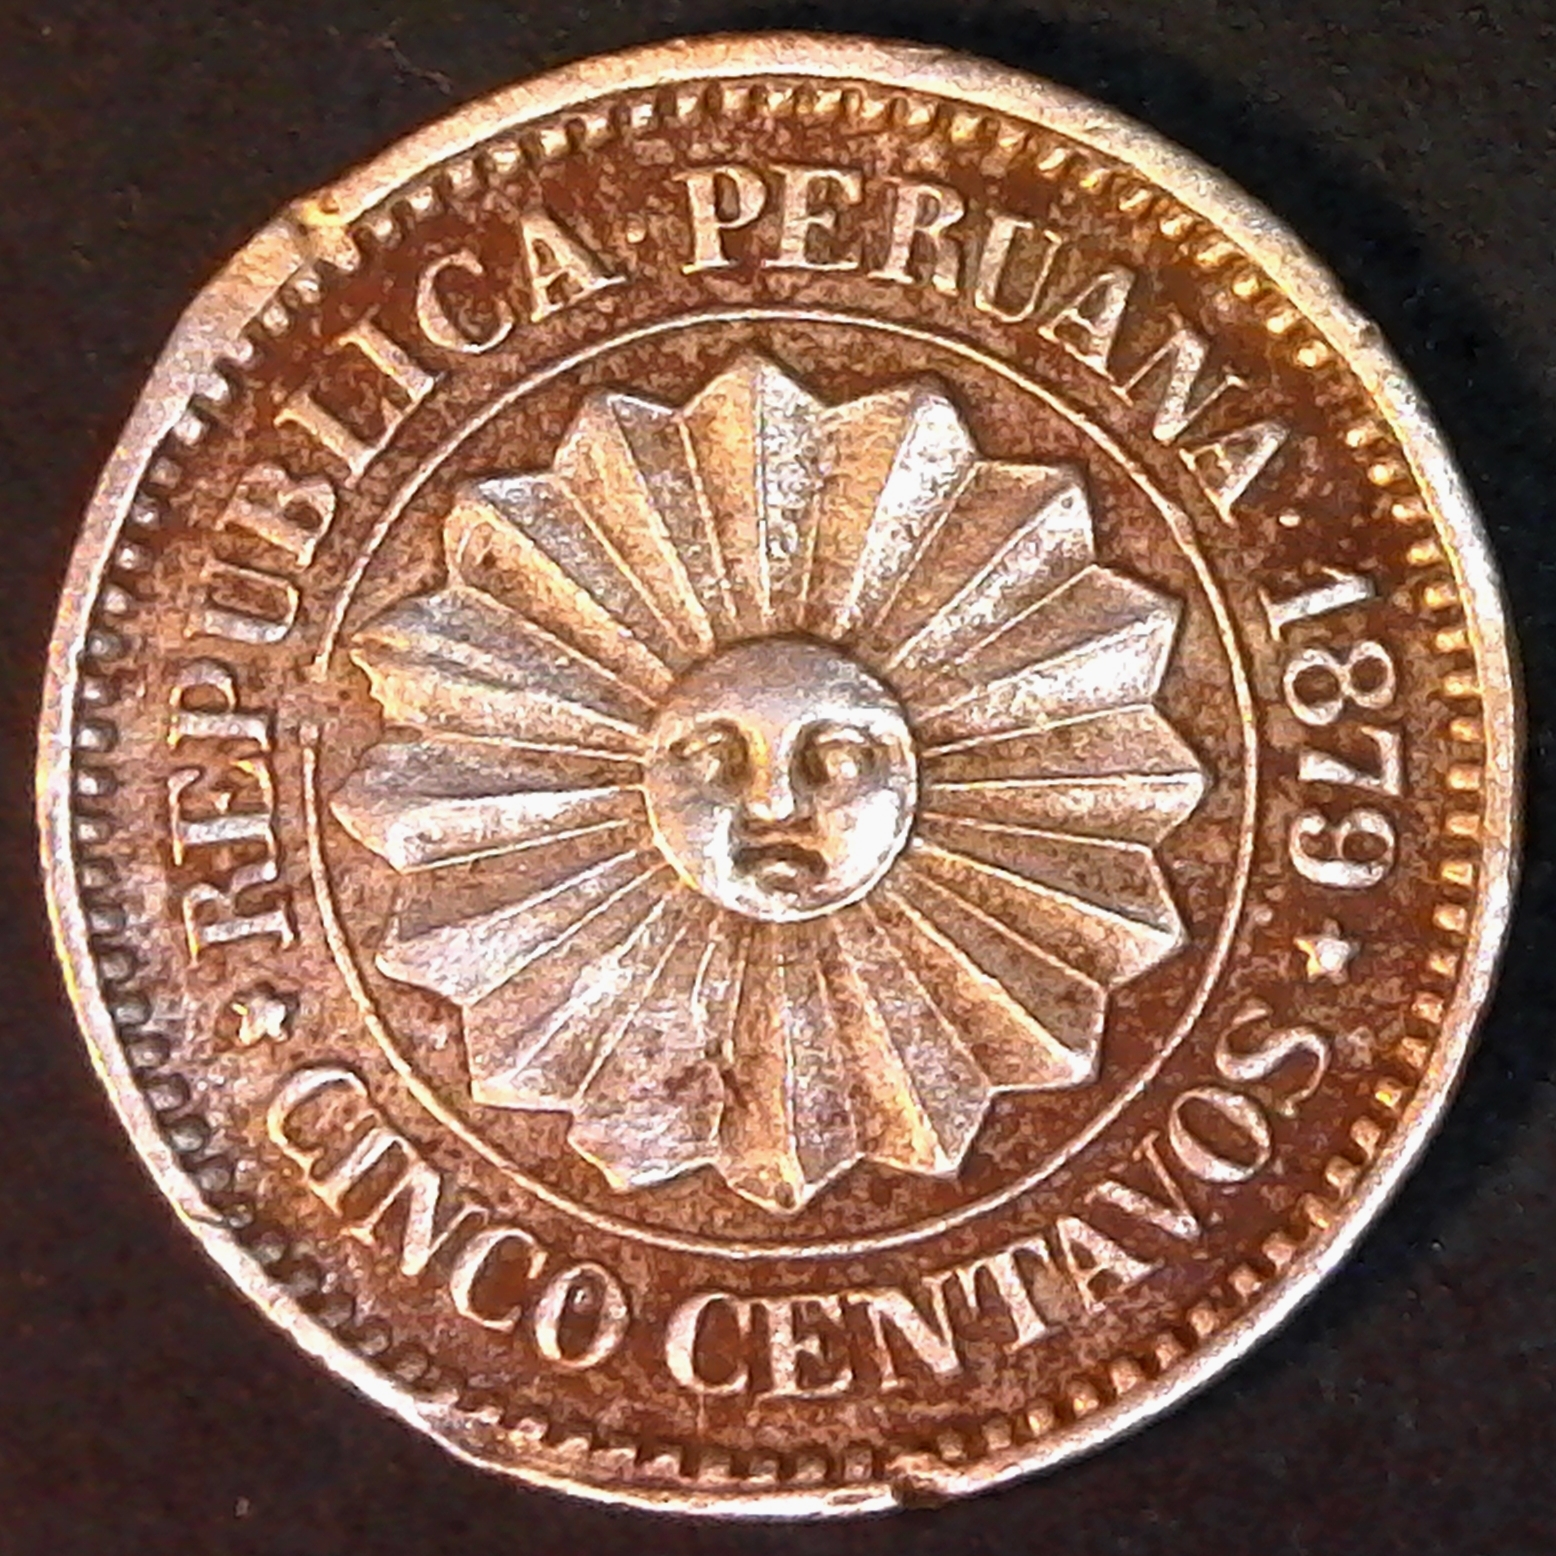 Peru Five Centavos 1879 obv.jpg